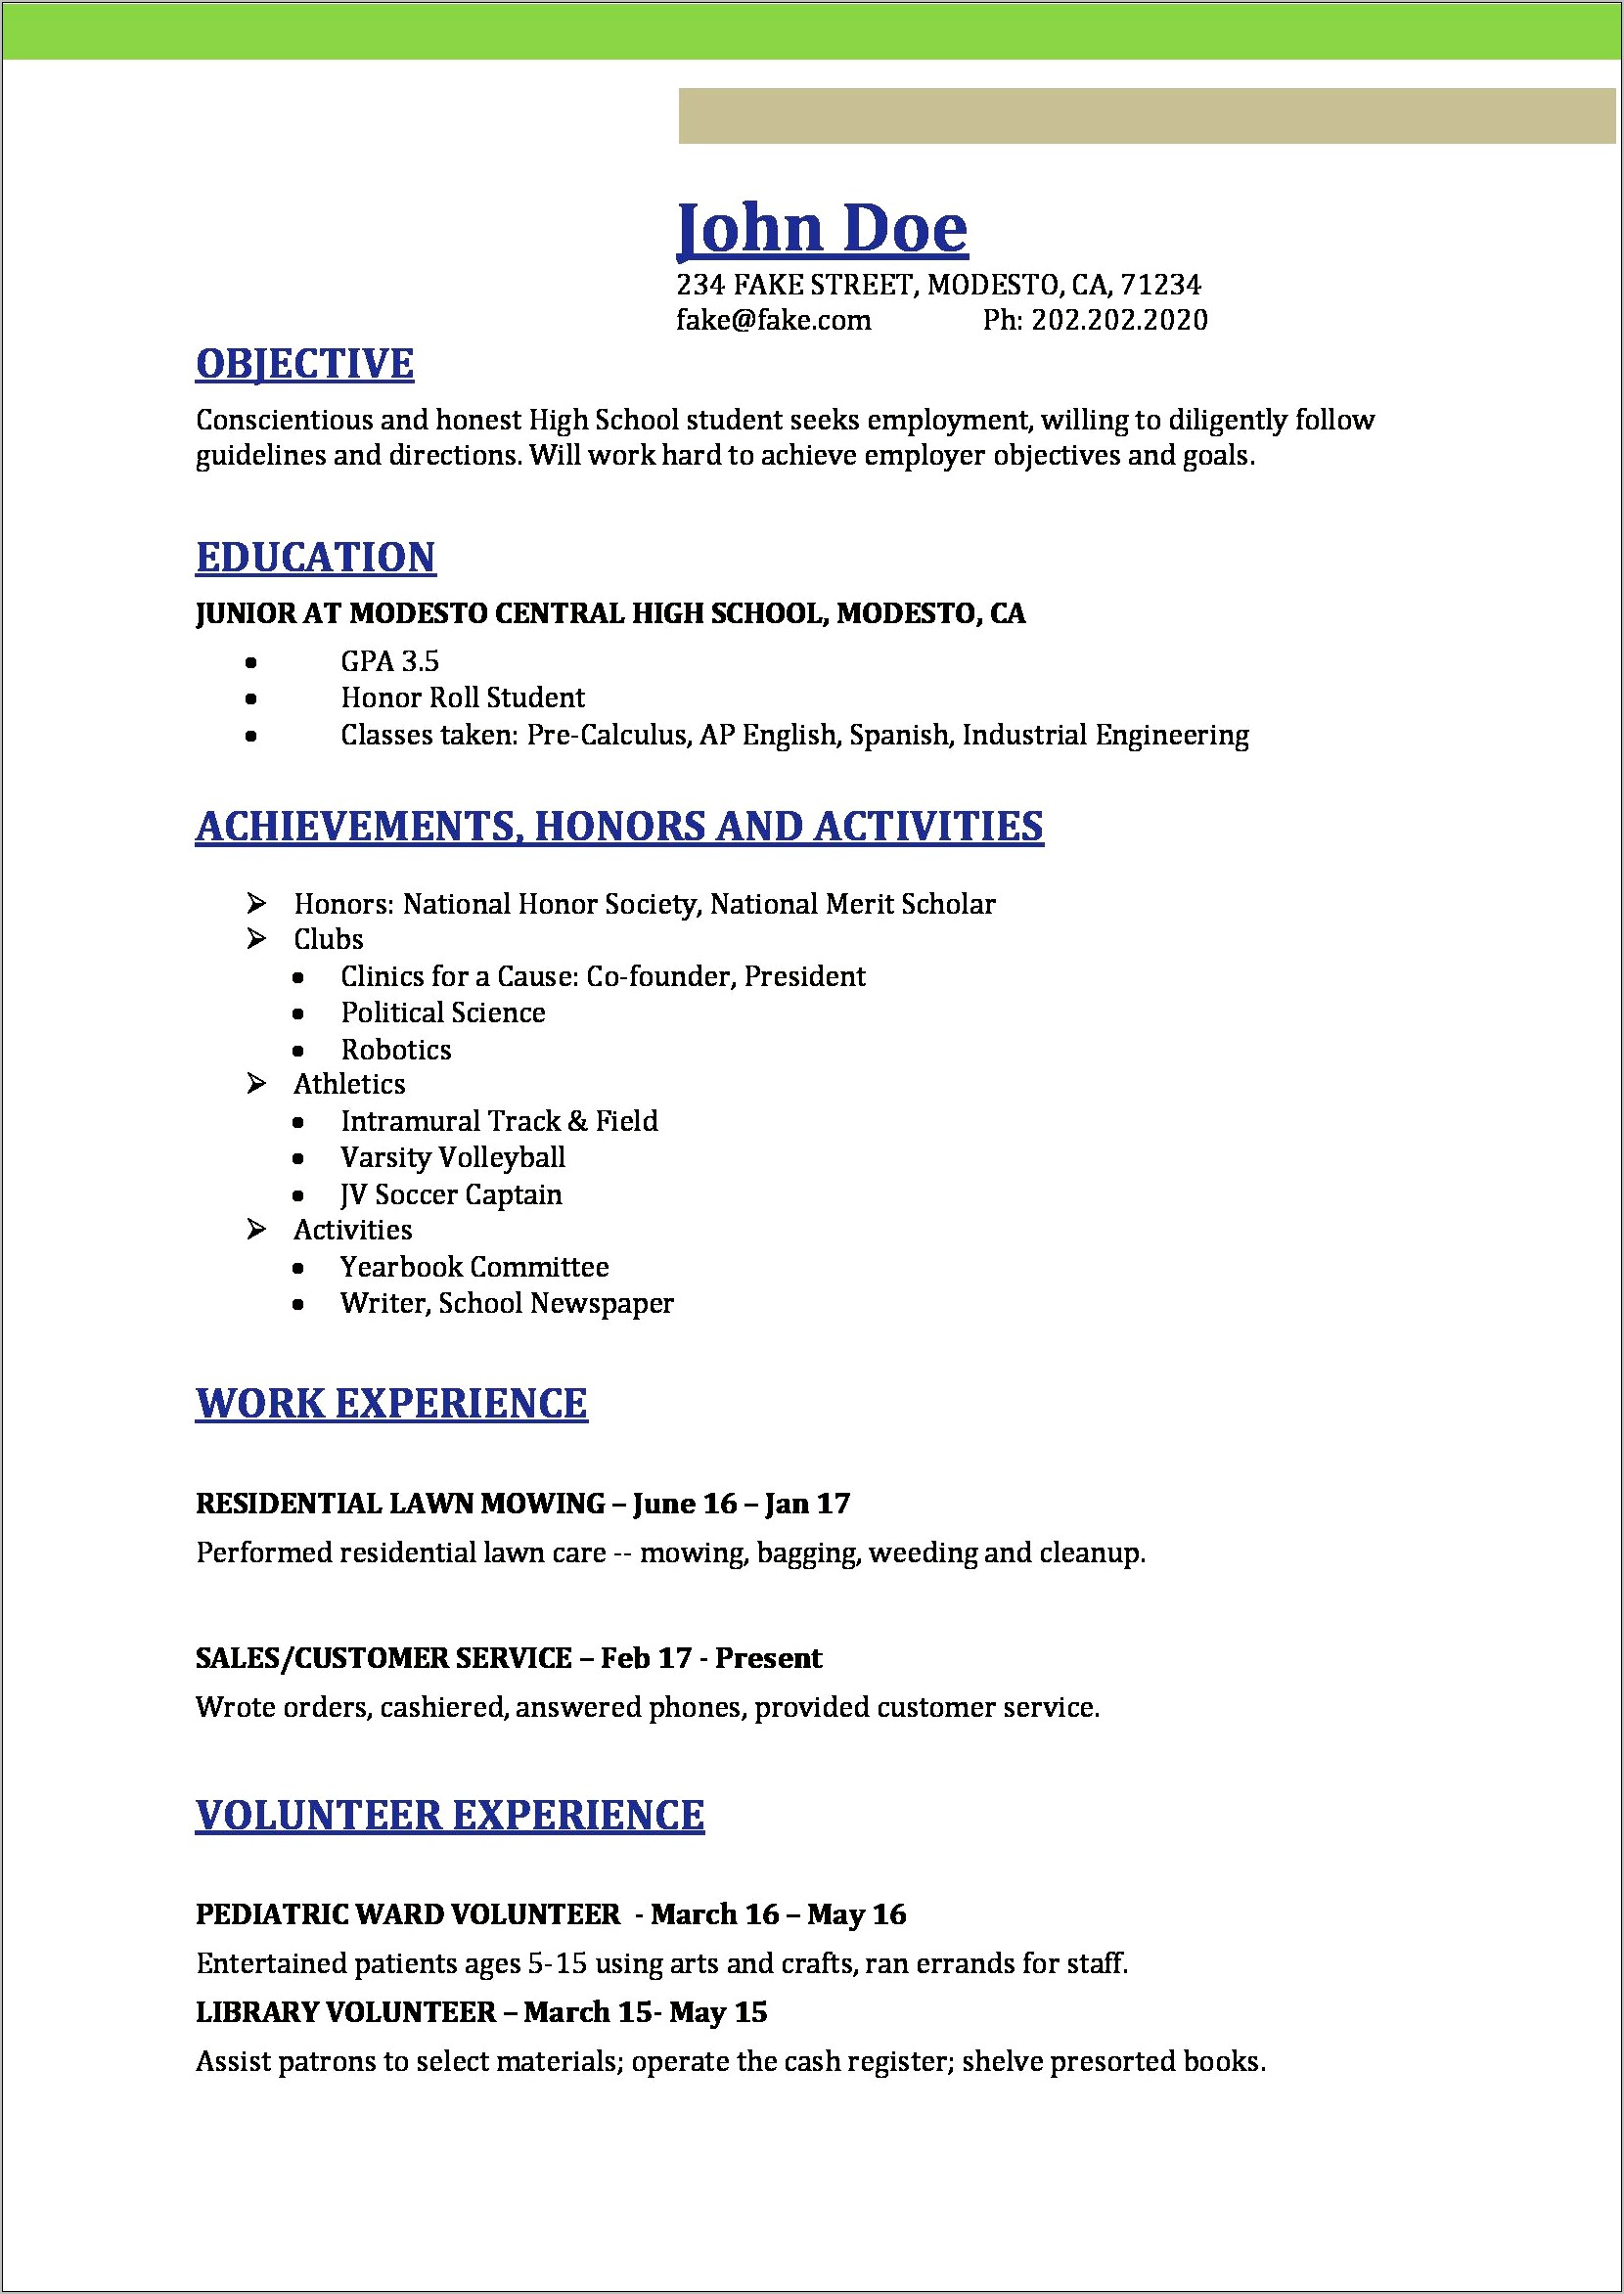 Resume Format For High School Junior Volunteers